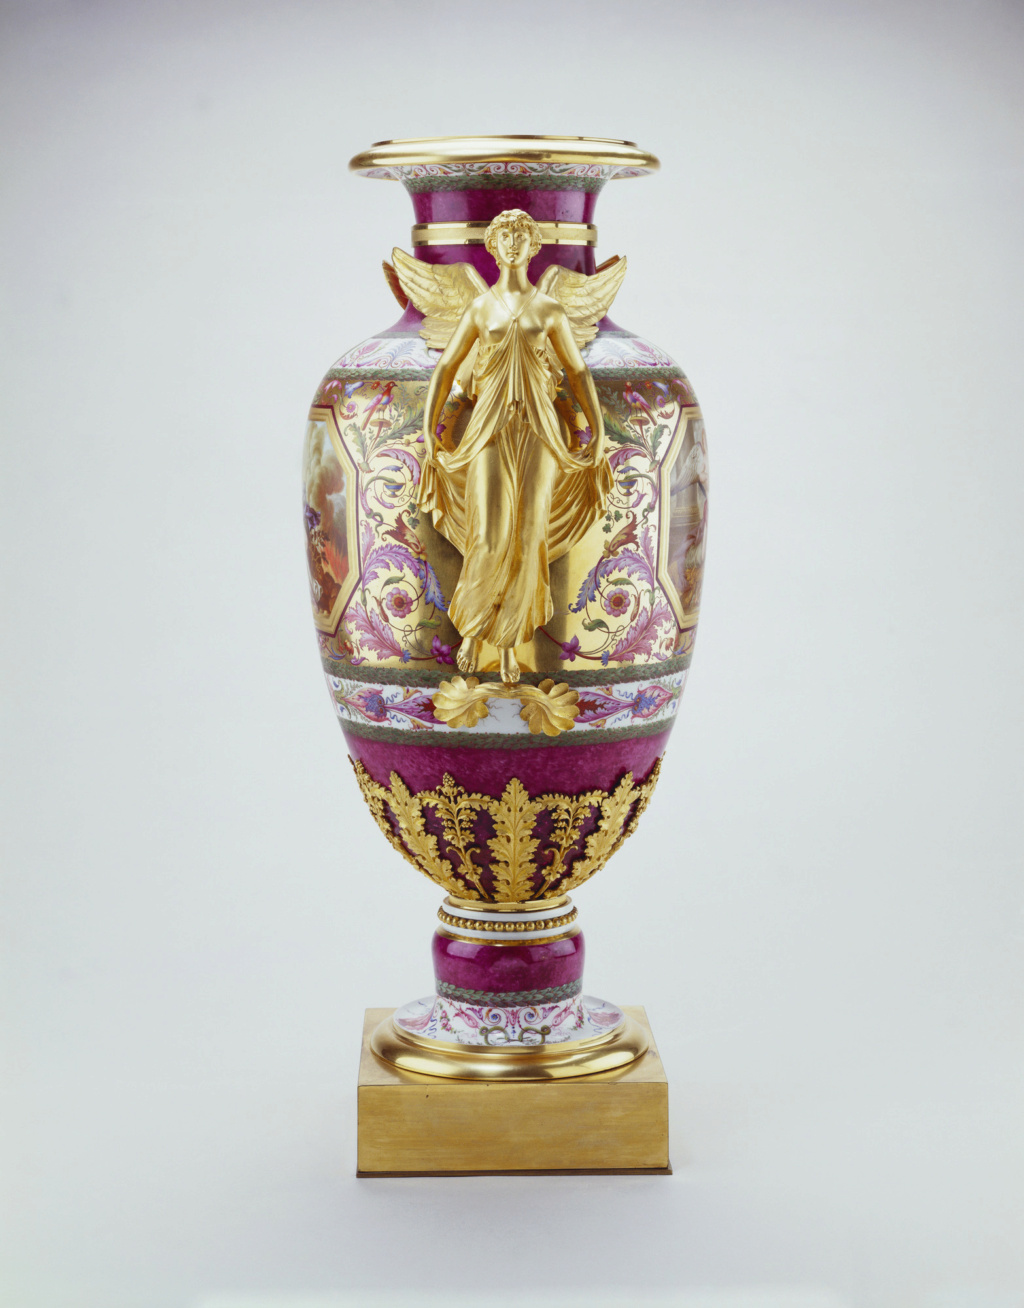 Les services en porcelaine de Sèvres de Louis XVI 16972910